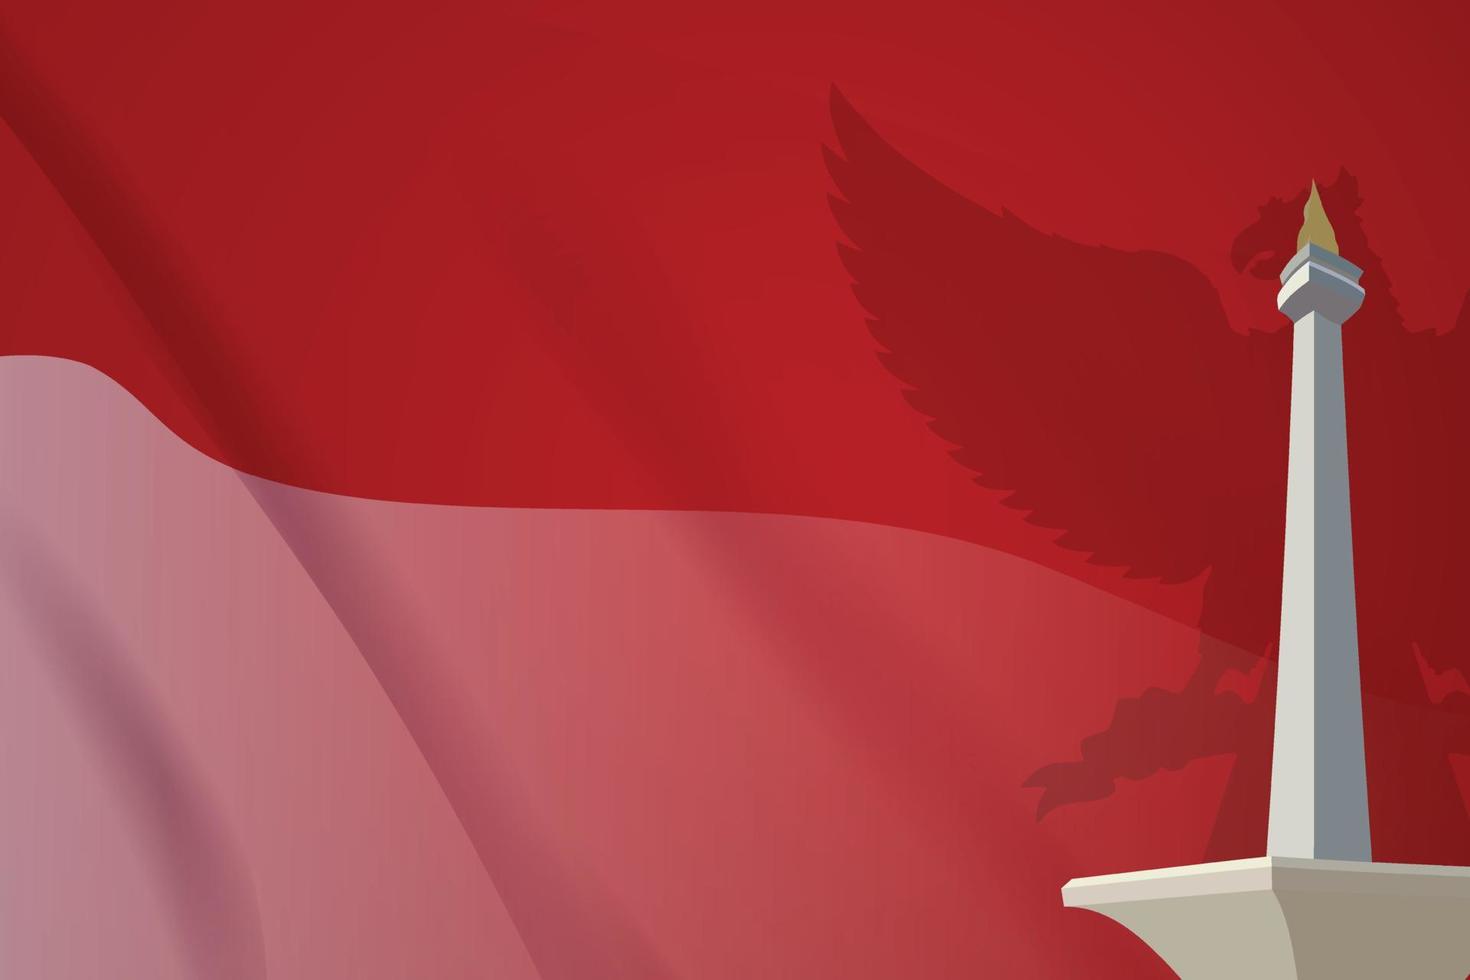 bandiera indonesiana rossa e bianca svolazzante sfondo stile con ornamento realistico punto di riferimento monas 3d e garuda bird vettore